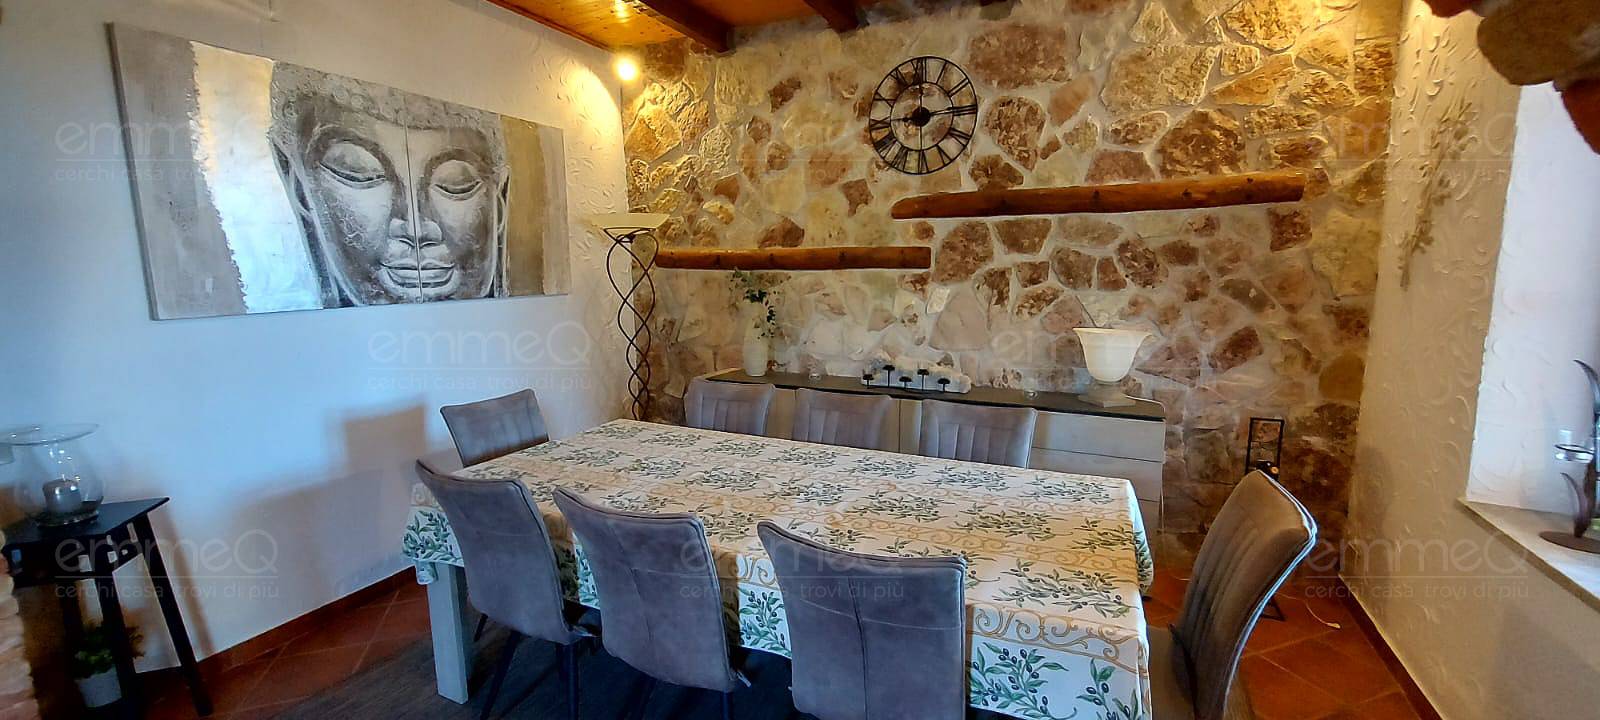 Villa in vendita, Casteldaccia villini